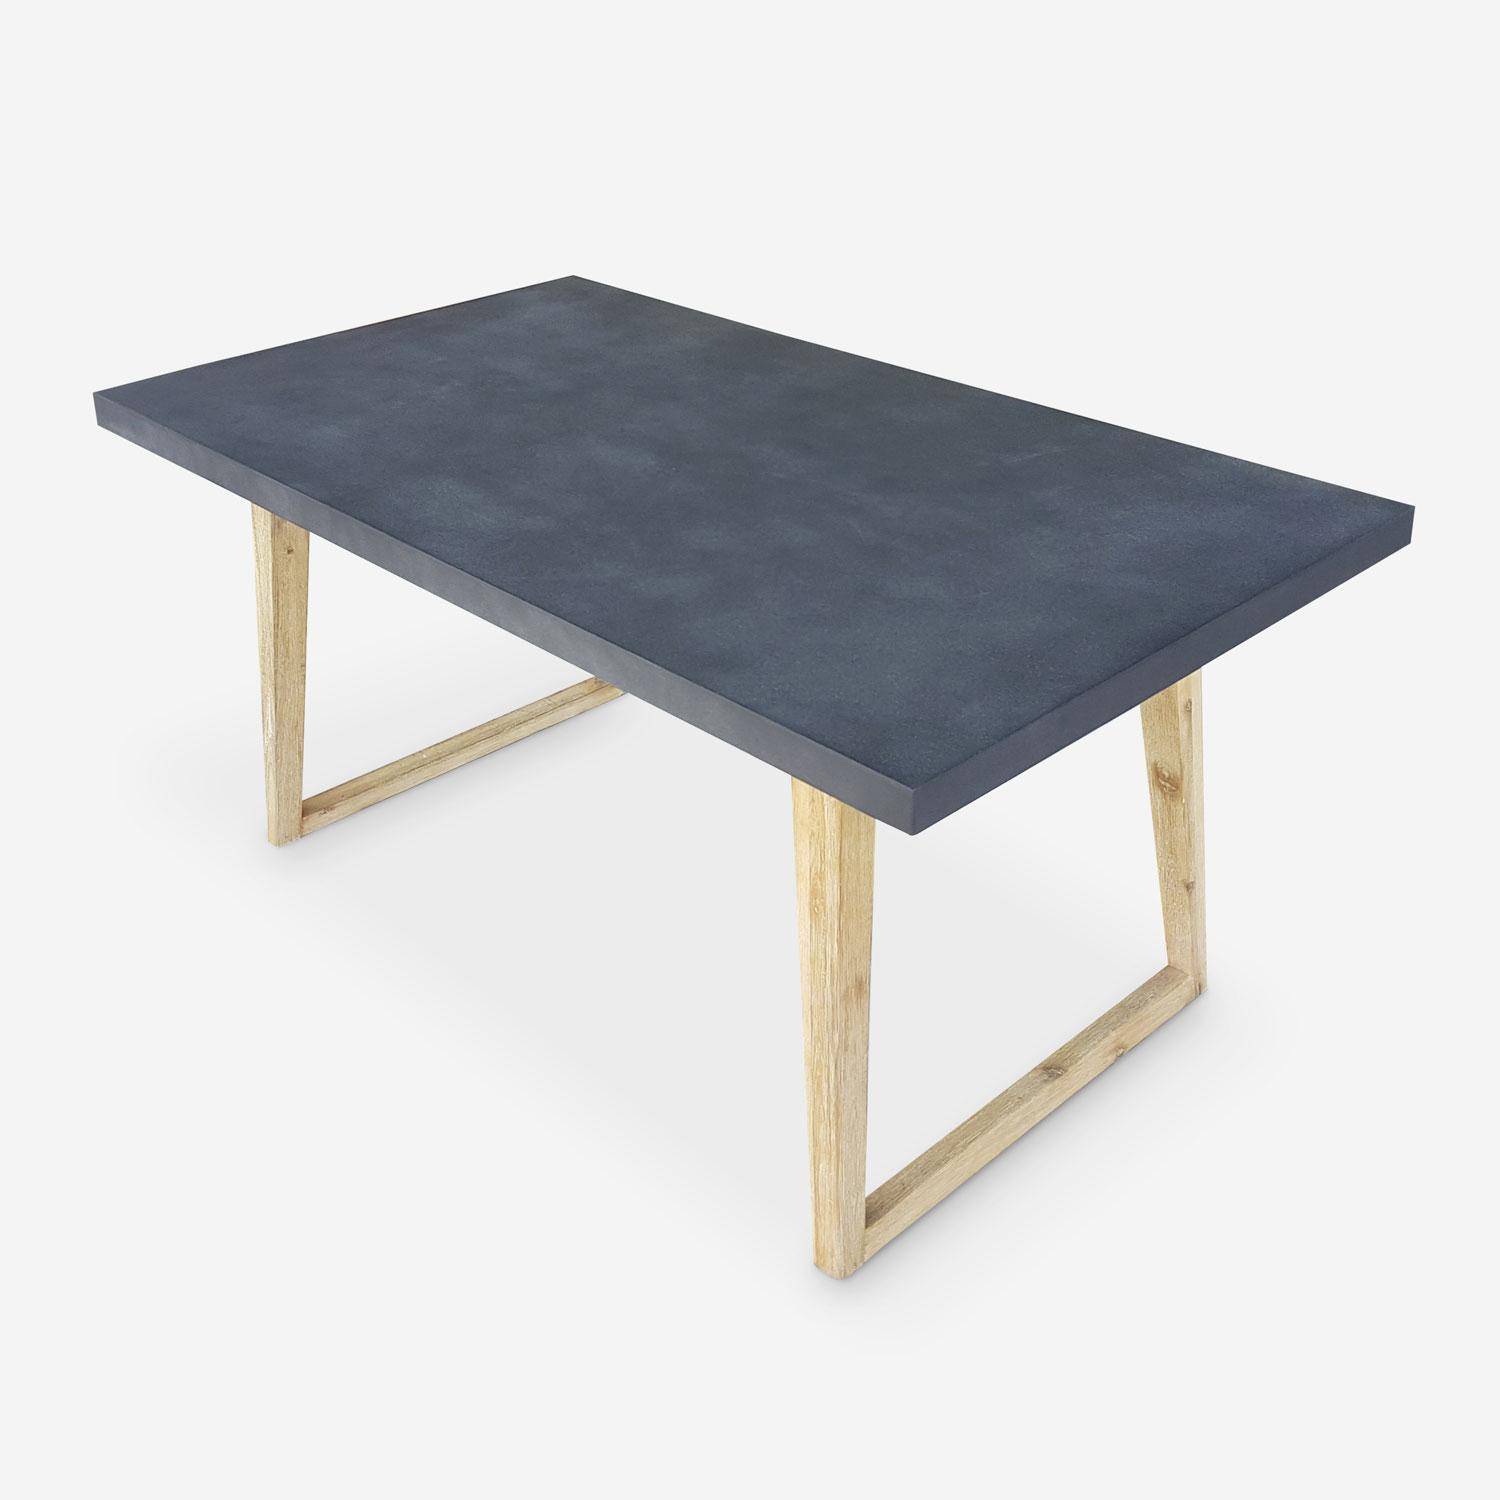 Gartentisch aus Faserzement 160 cm, U-förmiger Holzfuß - BORNEO - 4 Personen, Akazienbeine, graue Platte Photo1